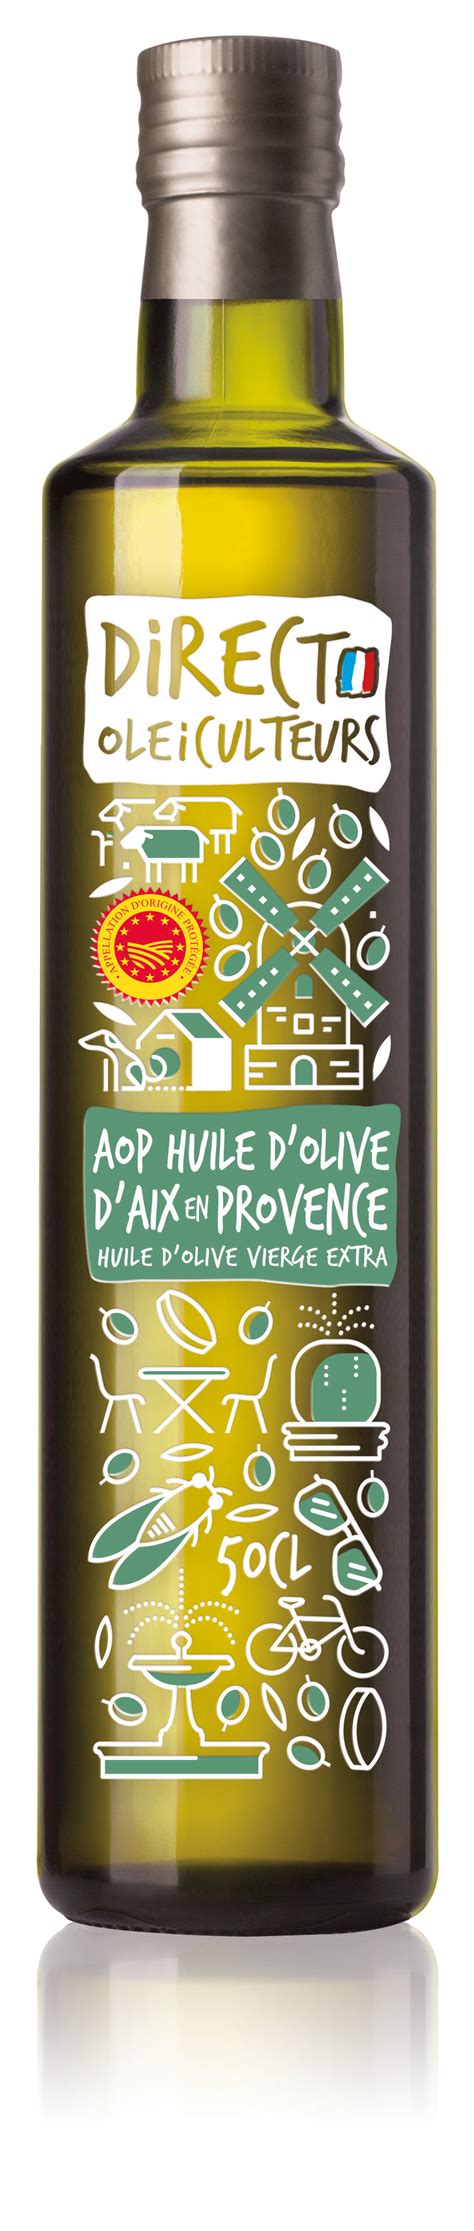 Huile d olive Aix en Provence AOP Direct Oléiculteurs